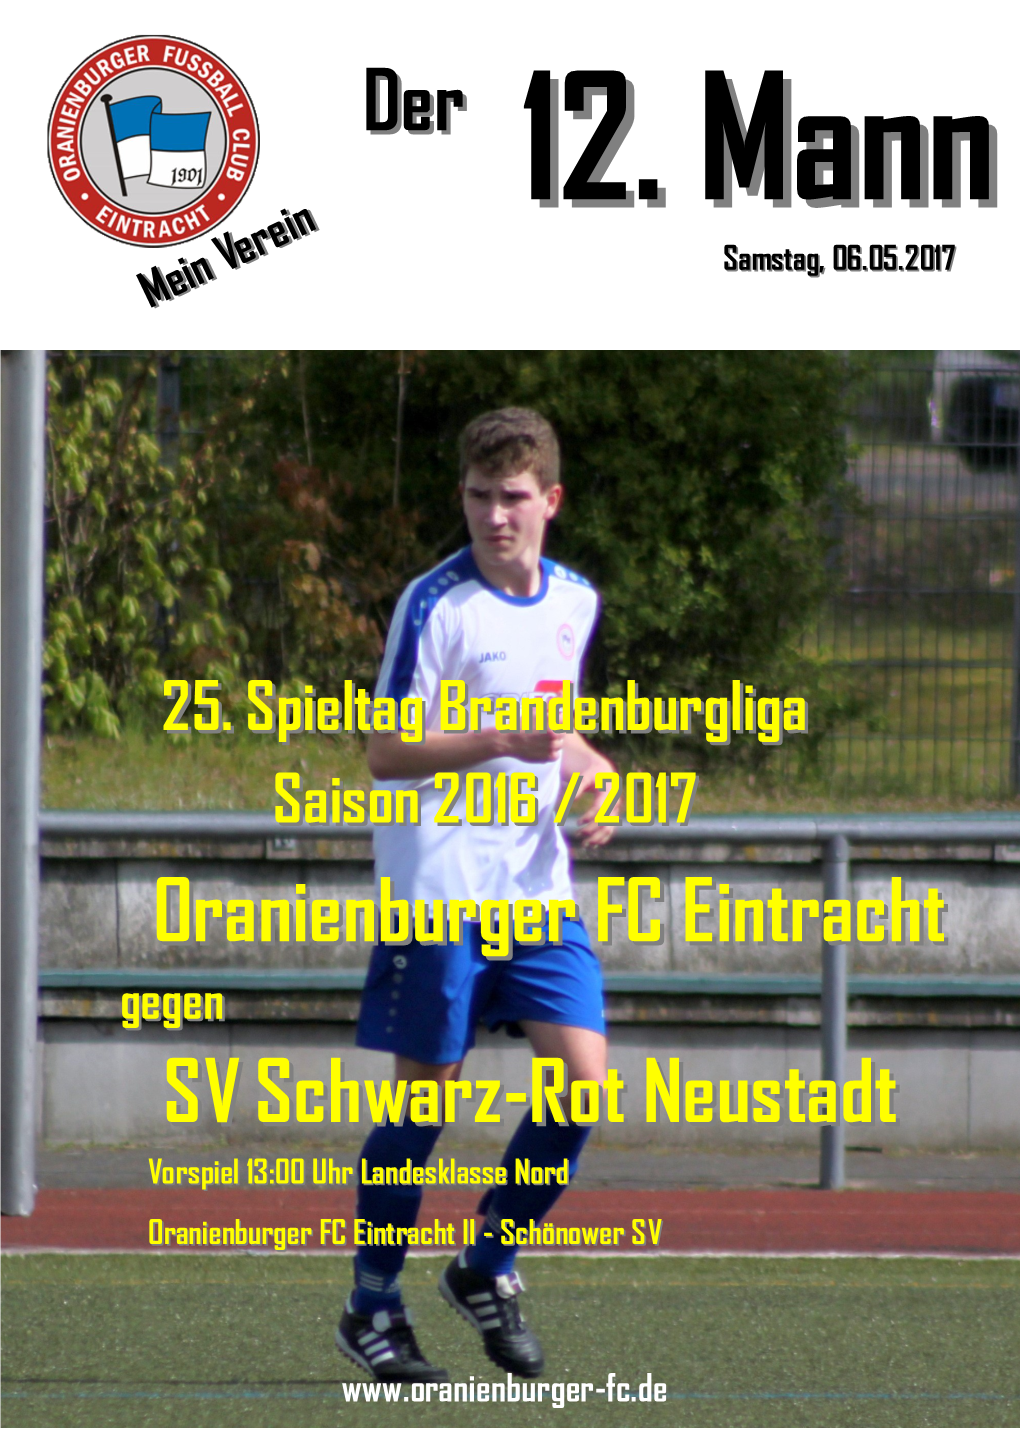 SV Schwarz-Rot Neustadt Oranienburger FC Eintracht